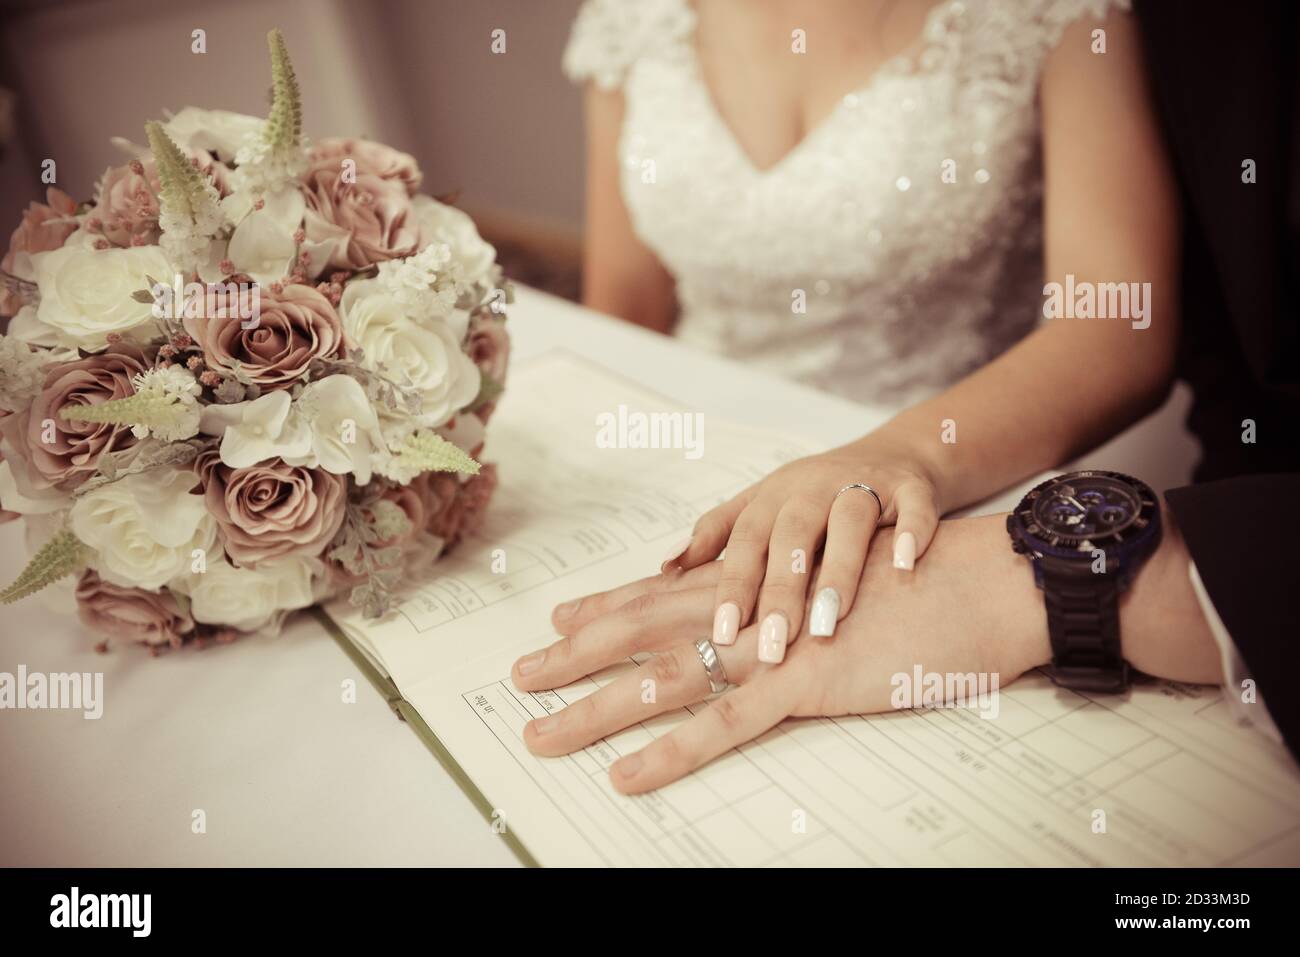 Coppia di nozze che mostra gli anelli di nozze sul registro di matrimonio di nozze Foto Stock